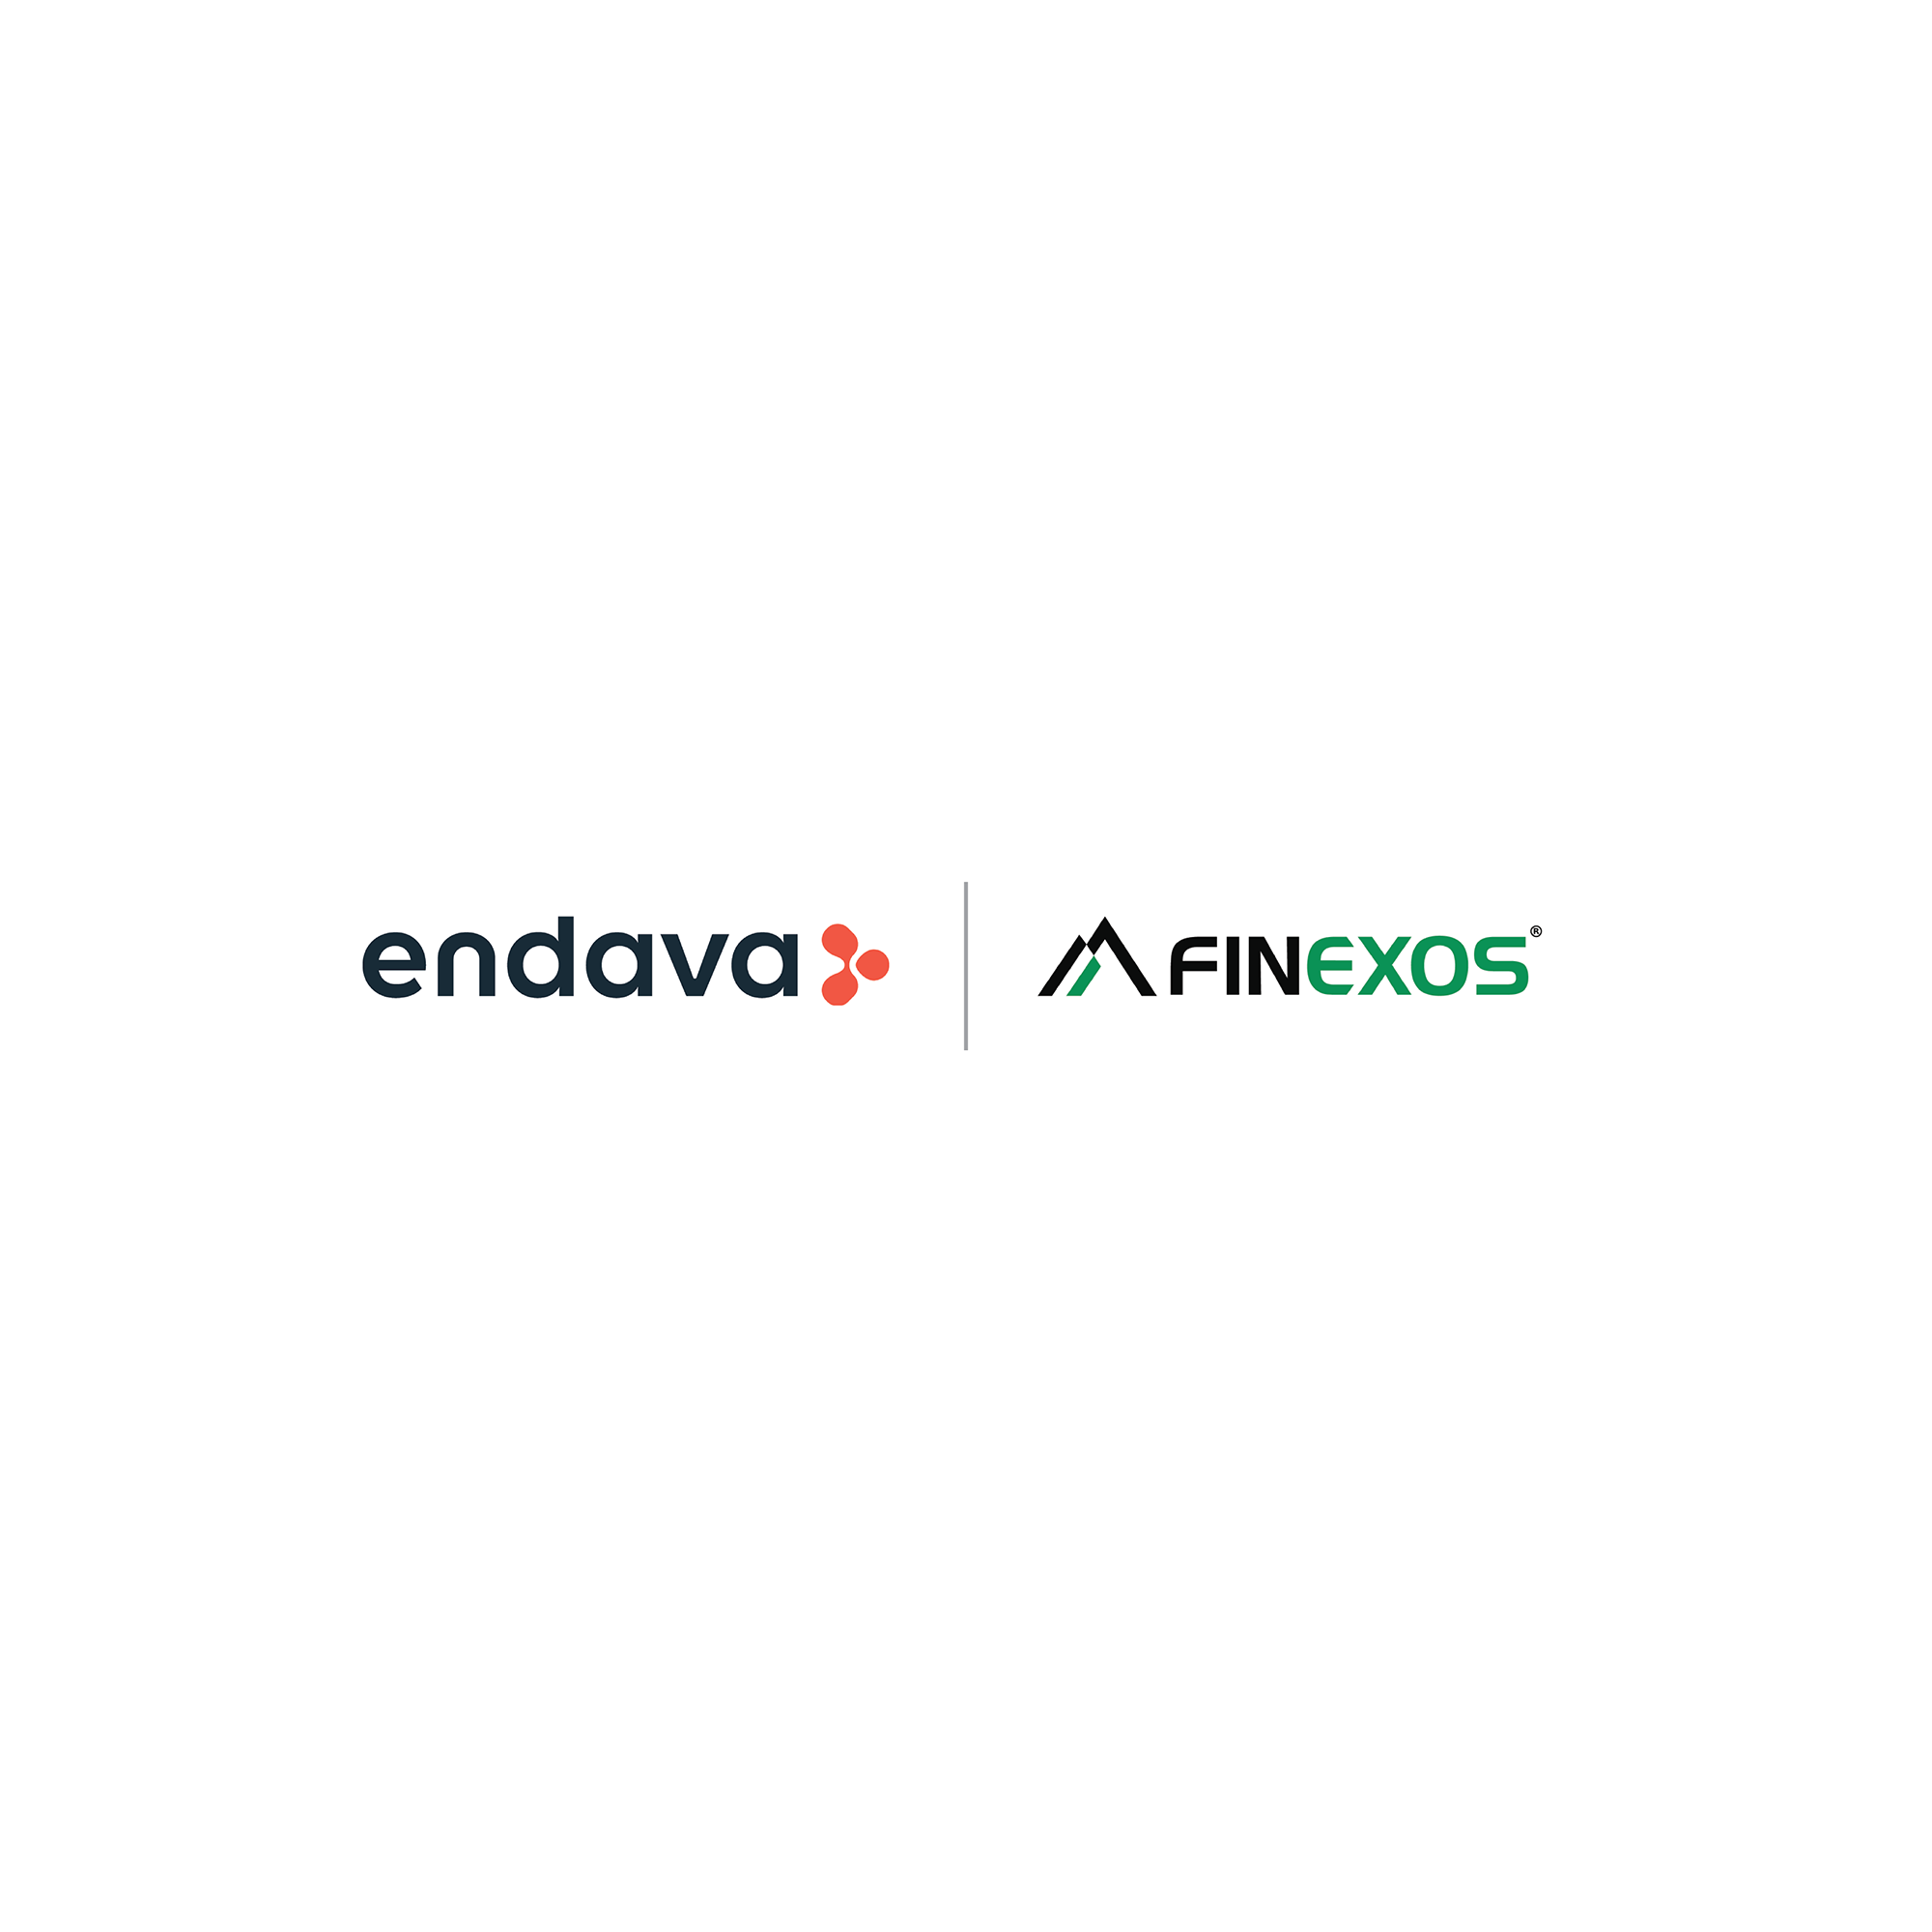 Endava and Finexos logos